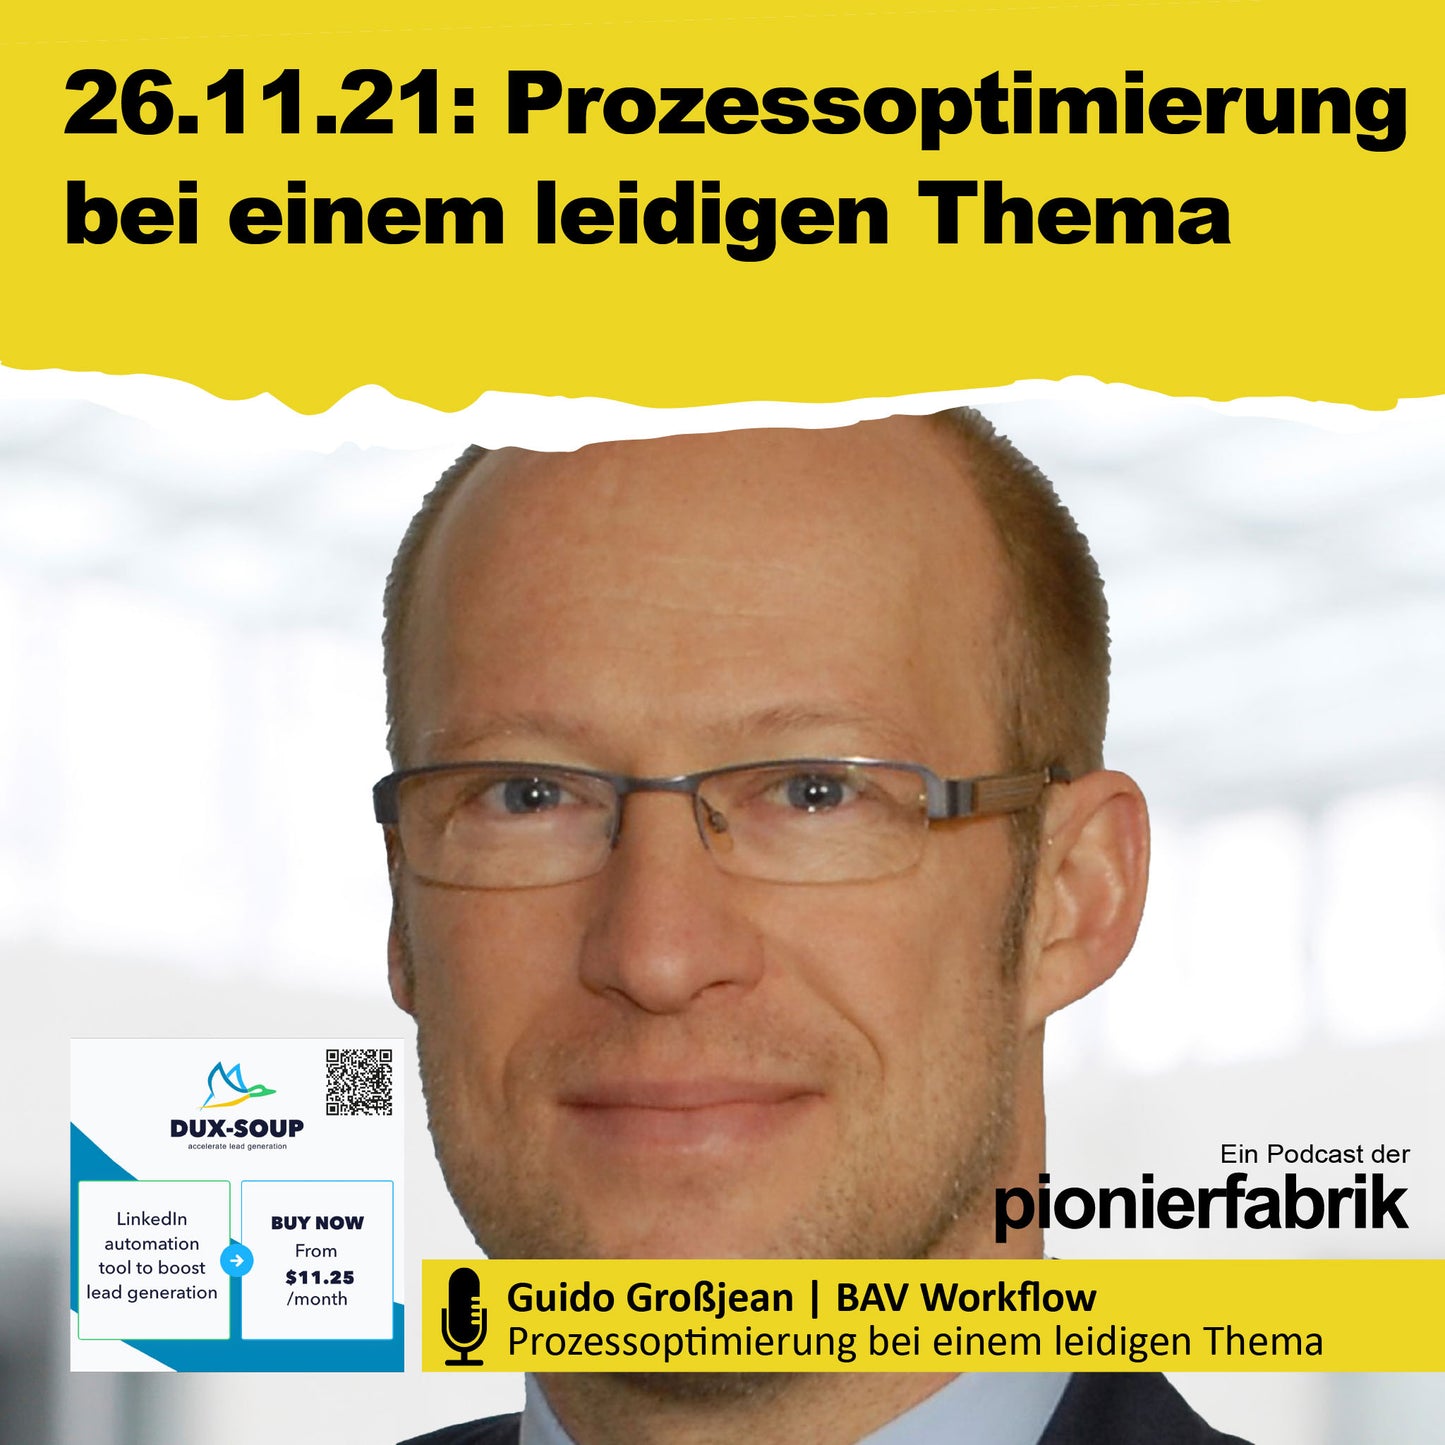 PRÄSENTATION | 25.11.2021 | "Prozessoptimierung bei einem leidigen Thema" Guido Grossjean | BAV Workflow